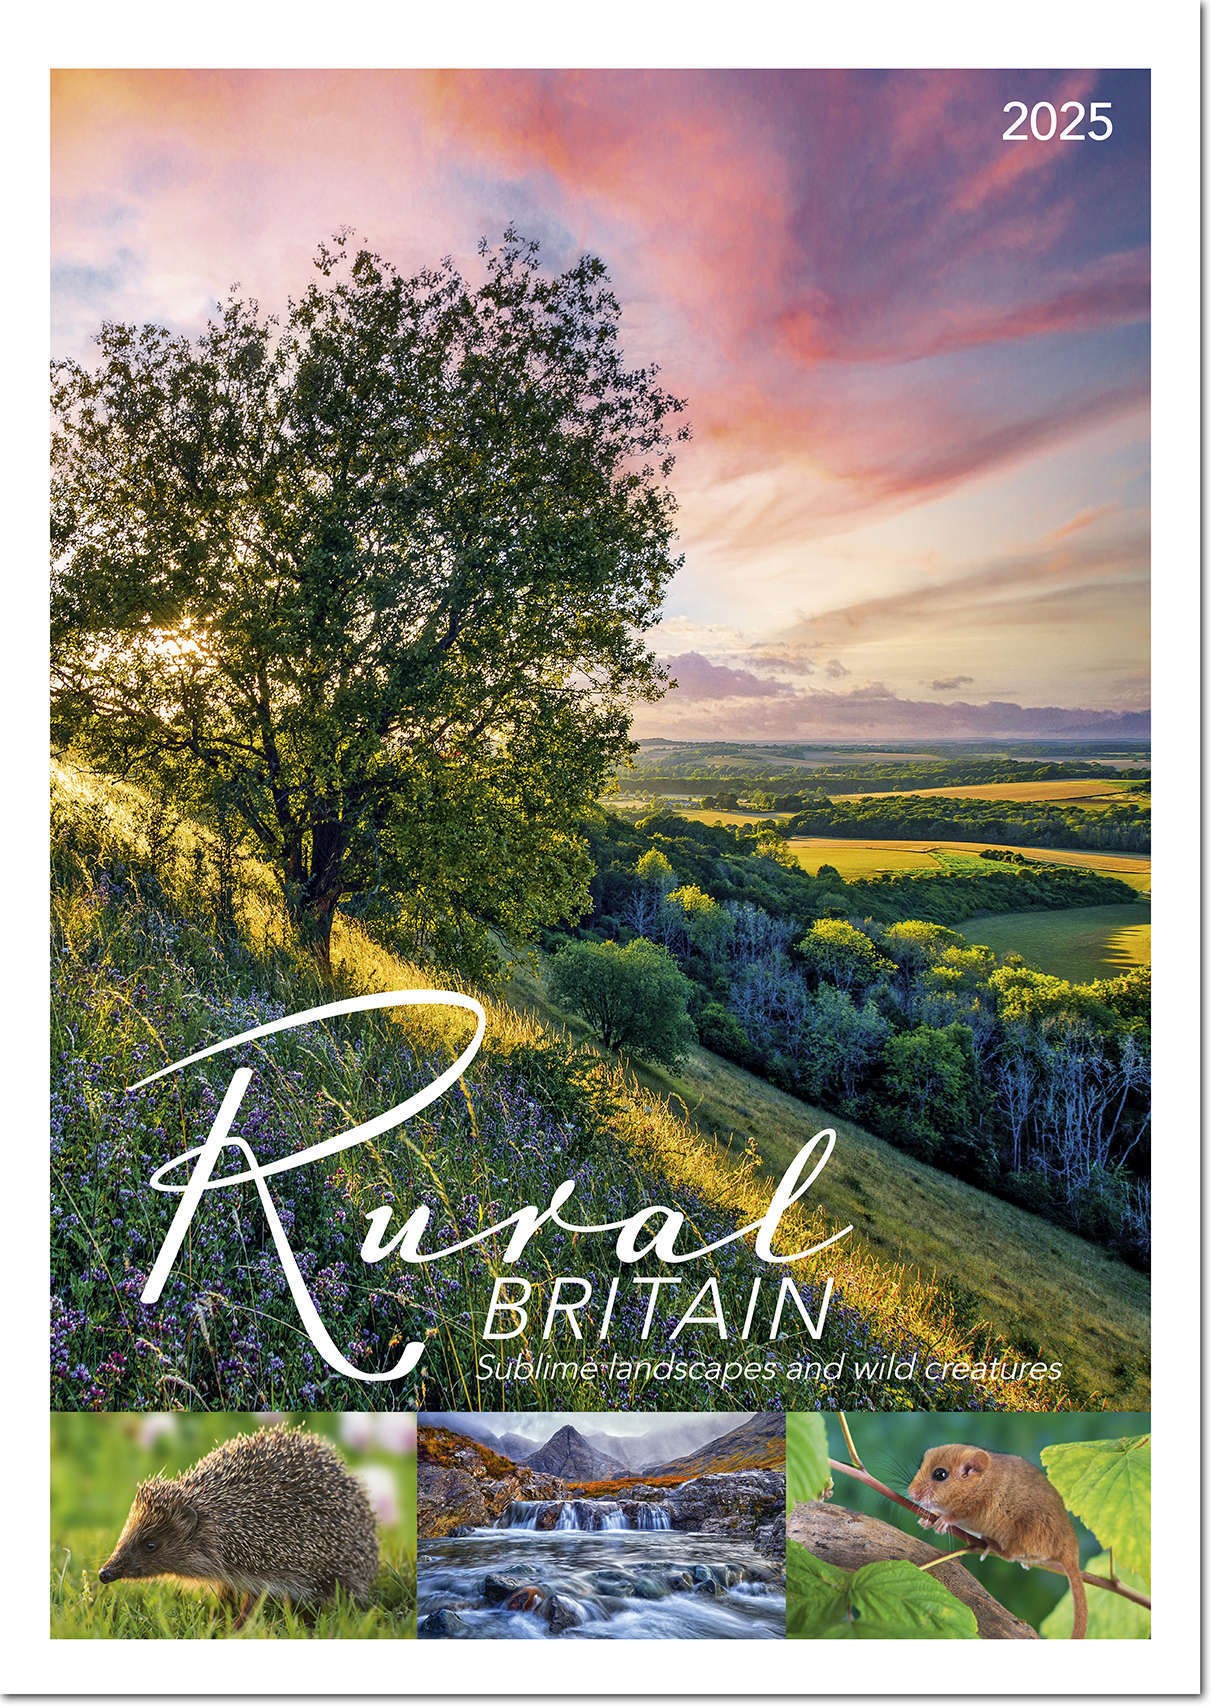 Rural Britain